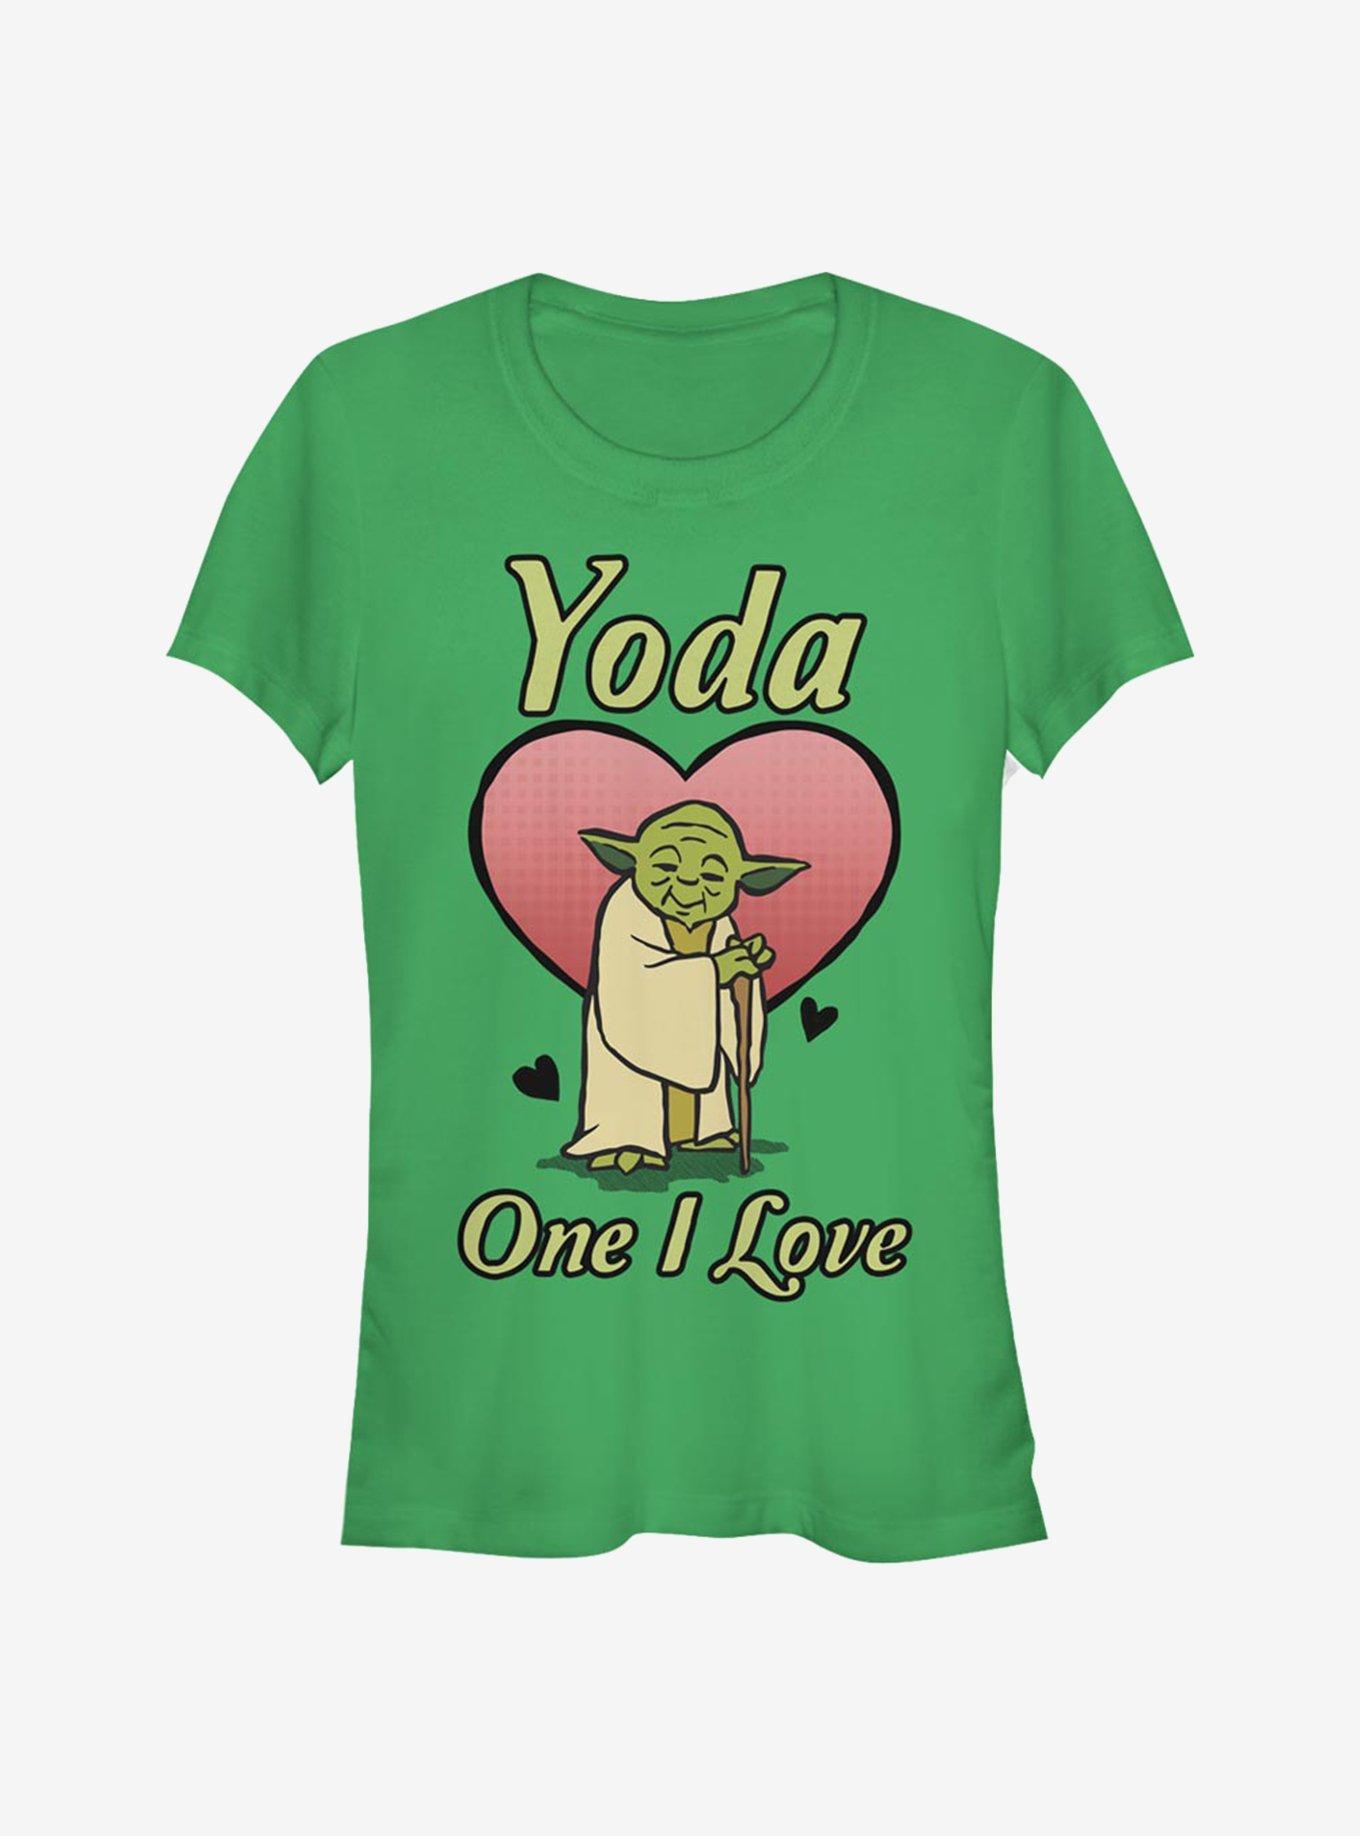 Star Wars Yoda One I Love Girls T-Shirt